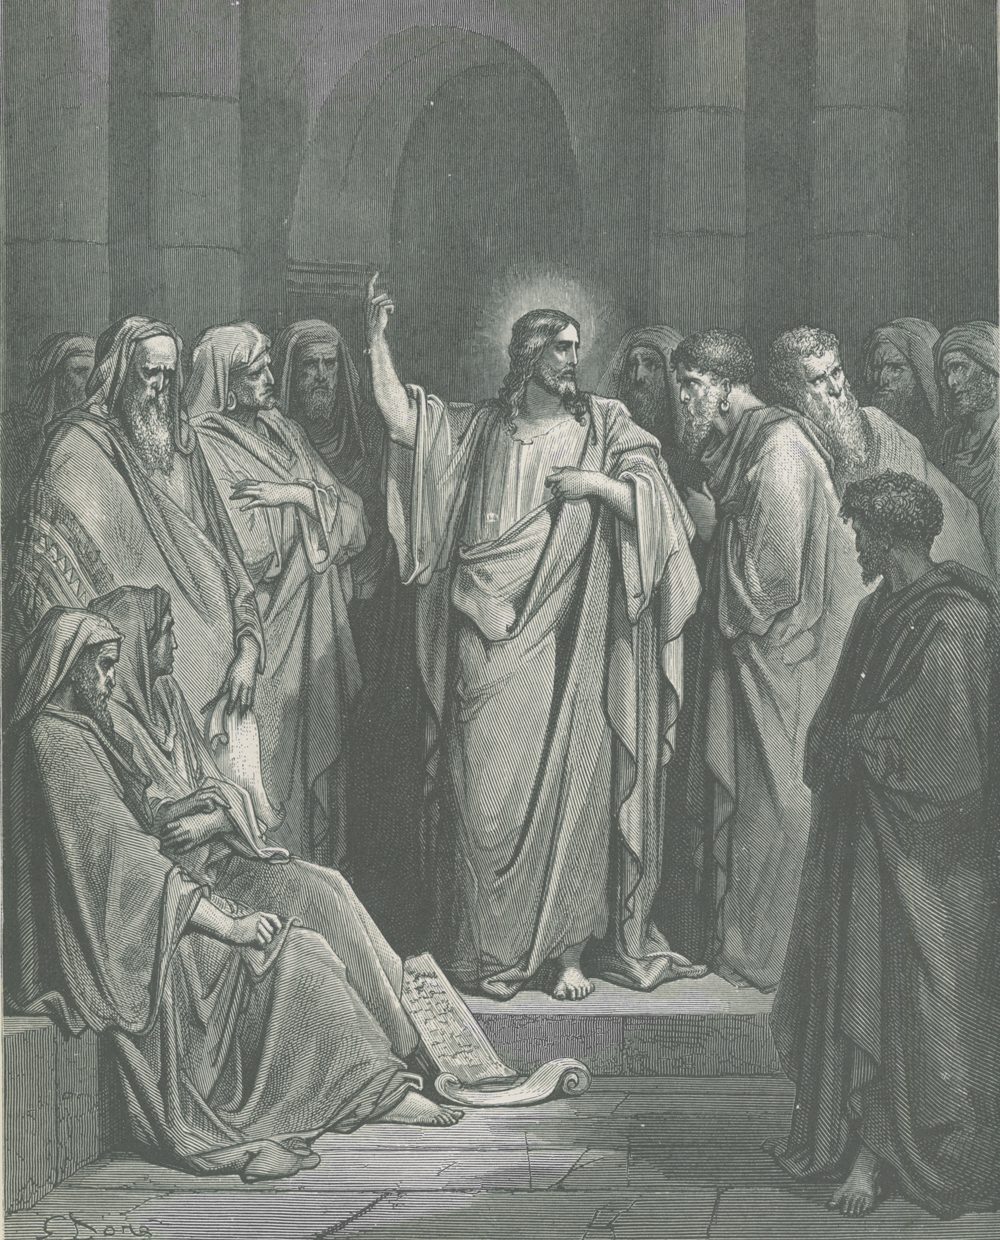 “พระเยซูในโบสถ์ยิว” ภาพโดย Gustave Doré ศิลปินชาวฝรั่งเศส เป็นเหตุการณ์ที่พระเยซูถูกตั้งแง่สงสัยโดยชาวบ้านในนาซาเร็ธตามที่พระวรสารของมัทธิว (๑๓:๕๔, ๕๕) ระบุว่า “เมื่อเสด็จมาถึงตำบลบ้านของพระองค์แล้วก็ทรงสั่งสอนในธรรมศาลานั้นจนผู้คนพากันประหลาดใจและกล่าวว่า...นี่ไม่ใช่ลูกของช่างไม้หรอกหรือ?...” 